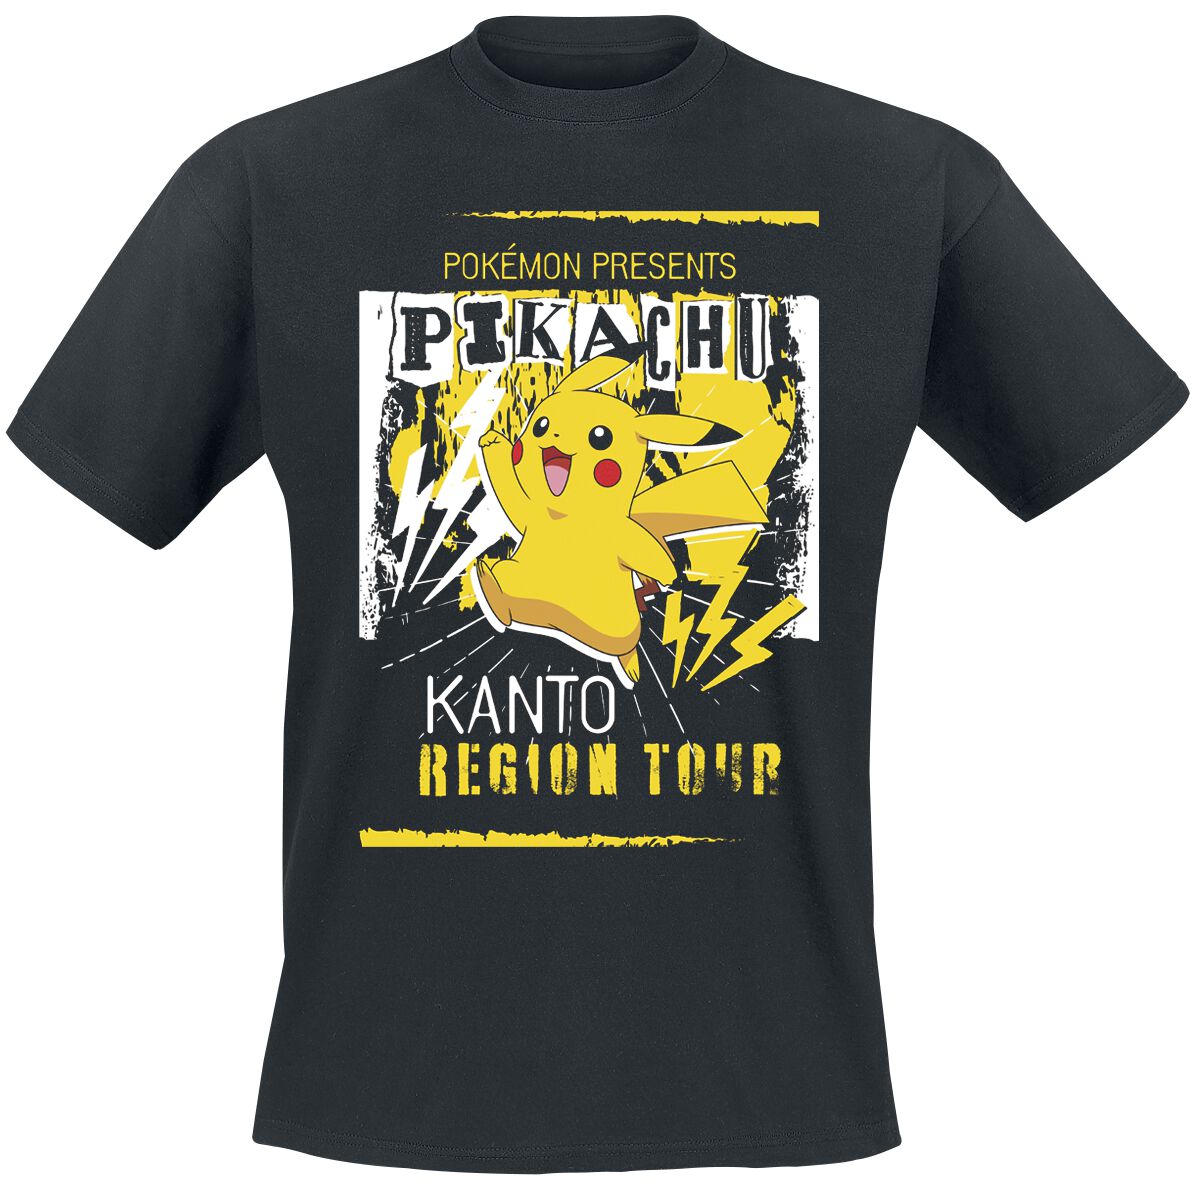 T-Shirt Manches courtes Gaming de Pokémon - Pikachu Kanto Region Tour - S à XXL - pour Homme - noir